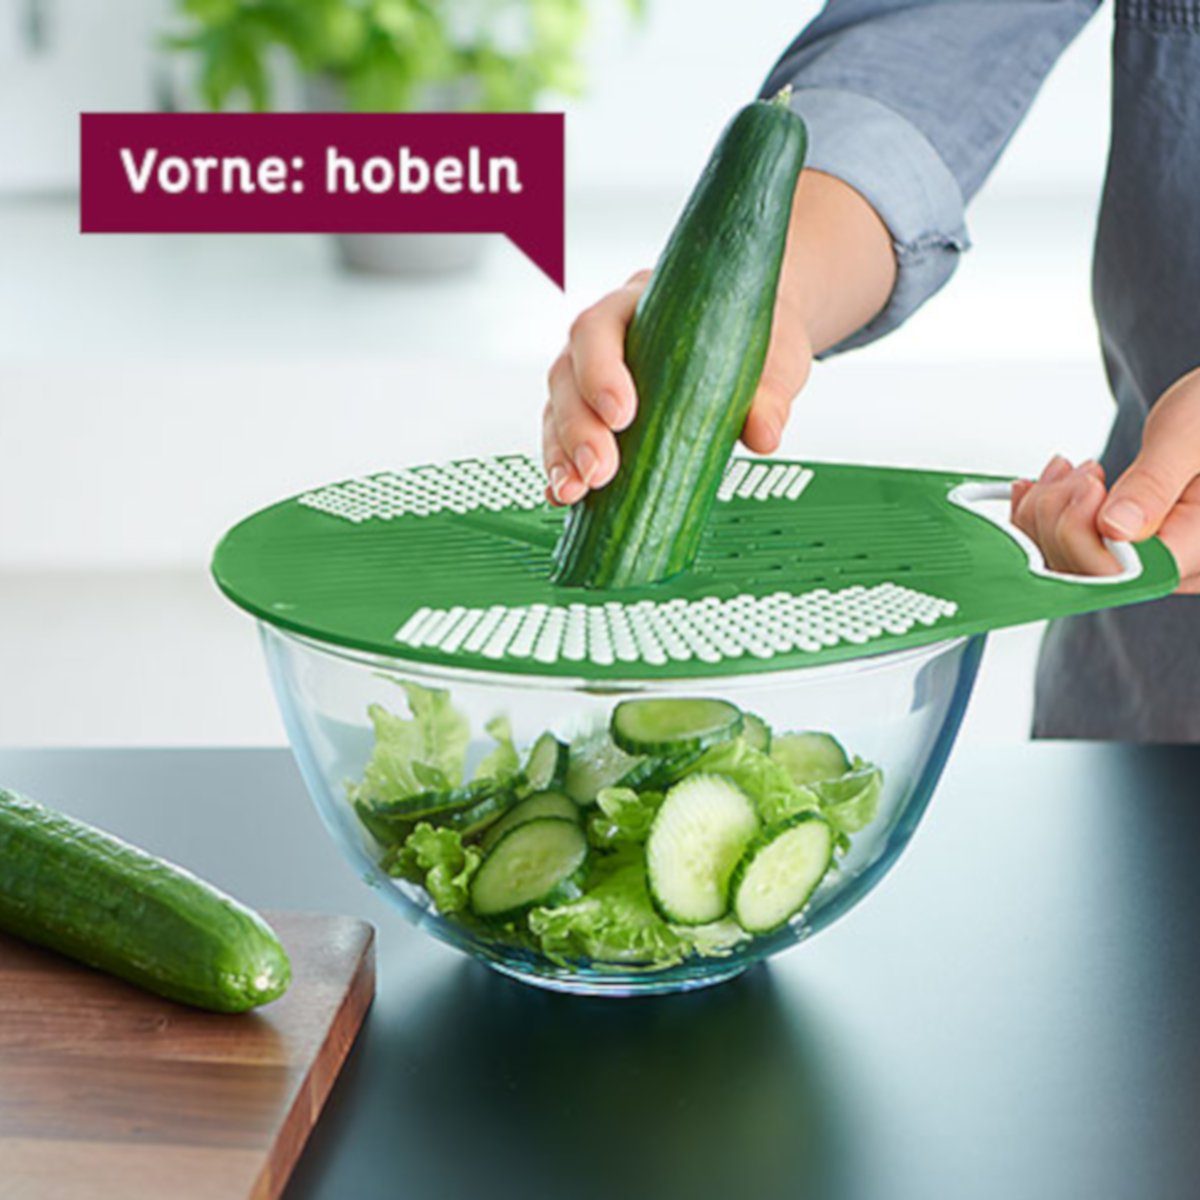 direkt 14-28cm Bossi Reibefläche Wende Zweiseitige Betty Gemüsehobel Schüsseln nutzbar Reibe-Deckel, über D Kunststoff (lebensmittelsicher),